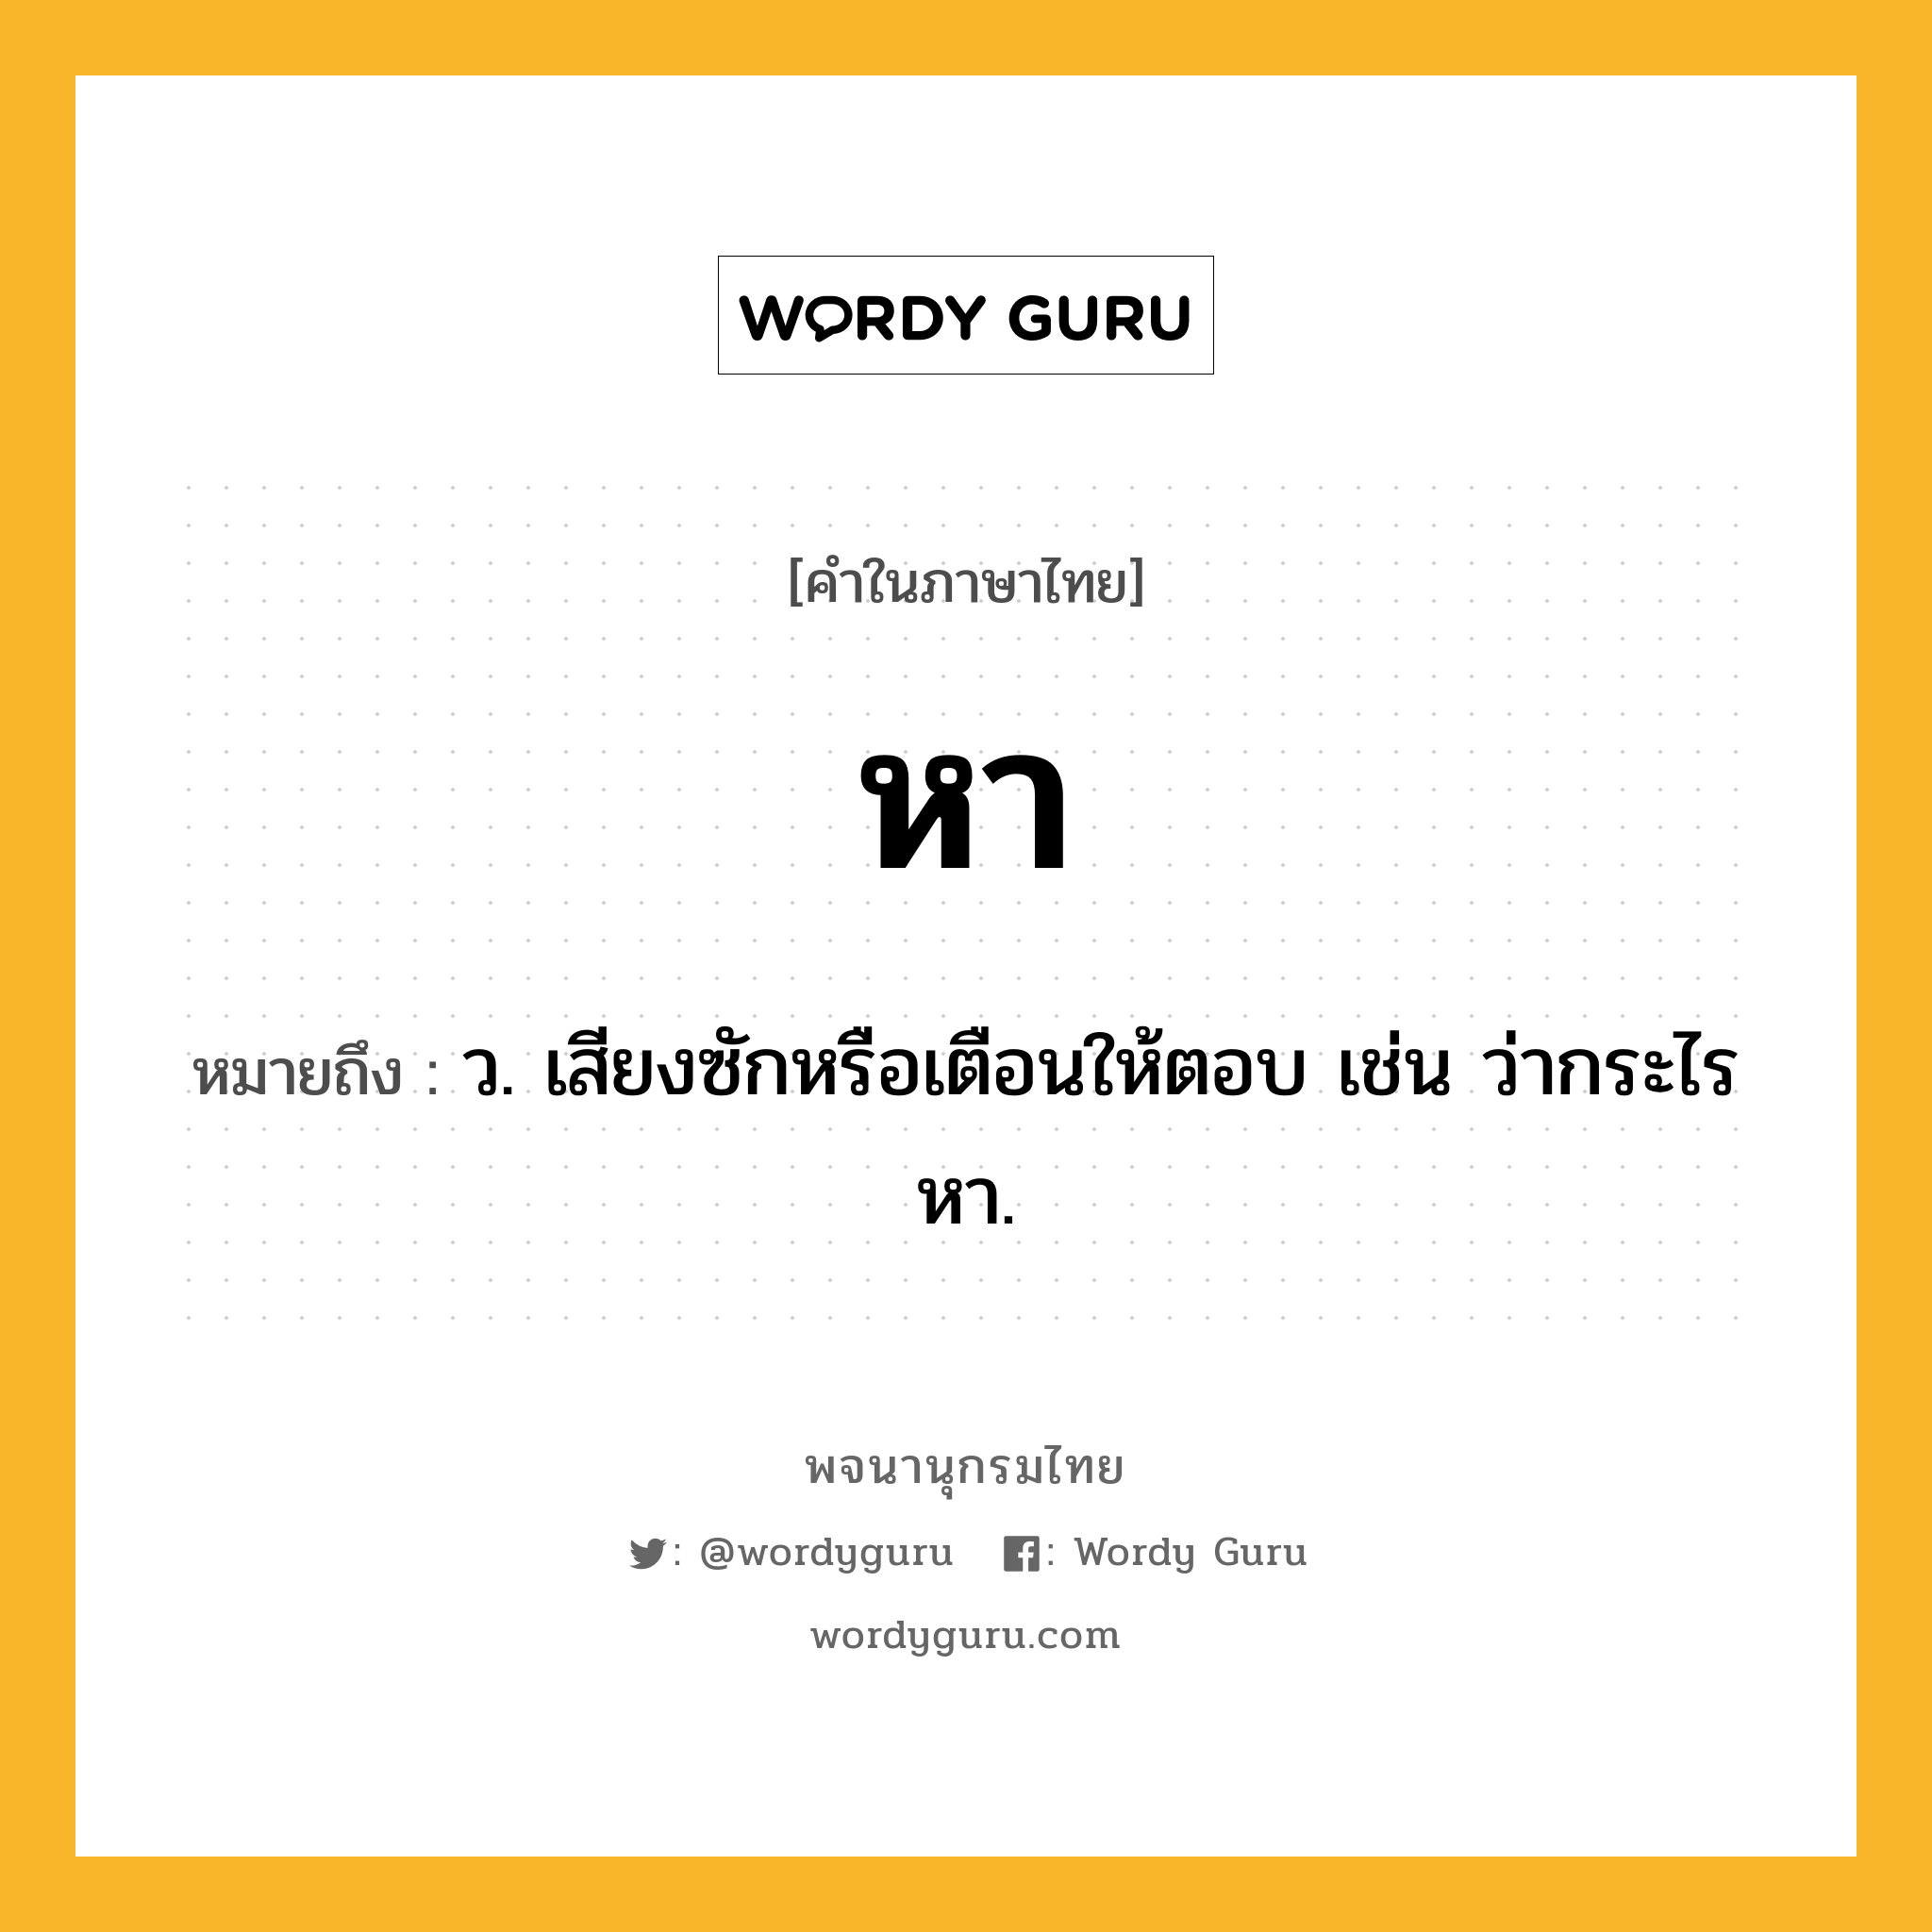 หา หมายถึงอะไร?, คำในภาษาไทย หา หมายถึง ว. เสียงซักหรือเตือนให้ตอบ เช่น ว่ากระไรหา.